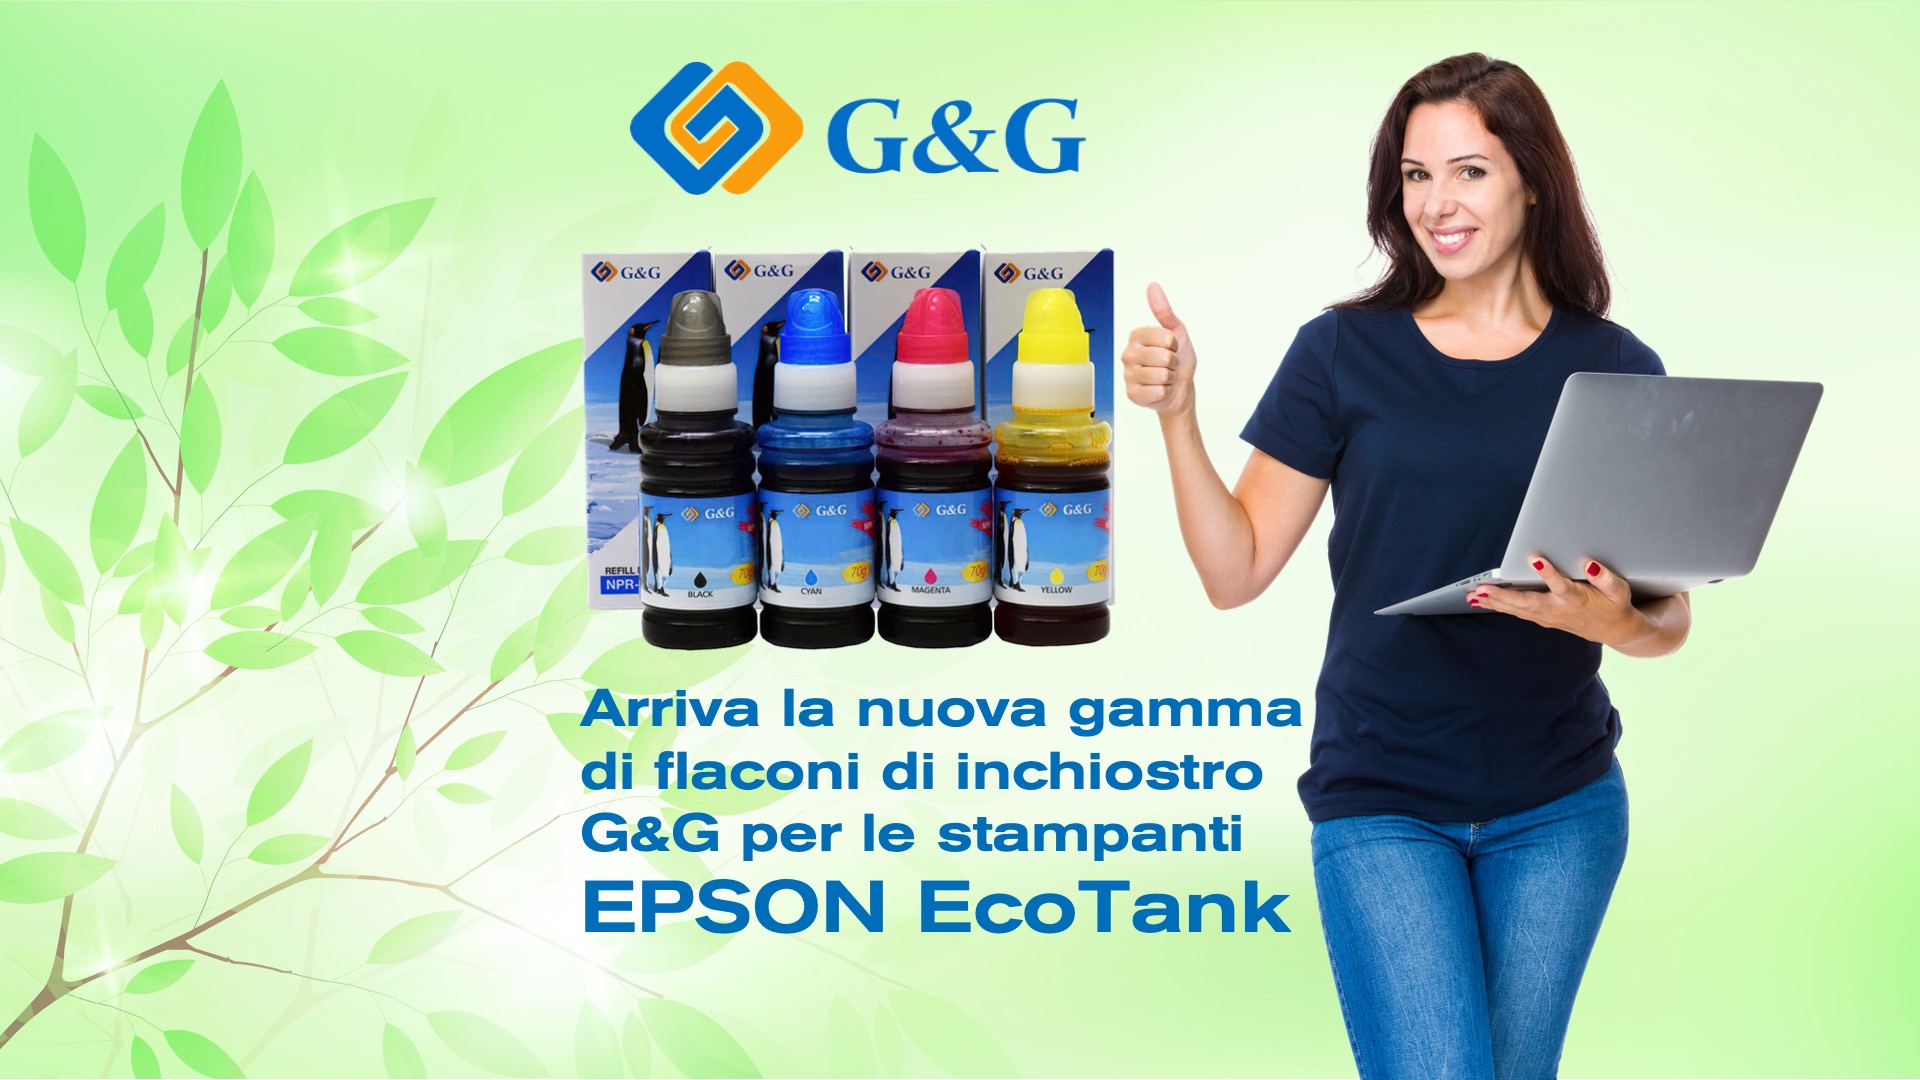 Arriva La Nuova Gamma Di Flaconi Di Inchiostro Gandg Per Le Stampanti Epson Ecotank K 9553